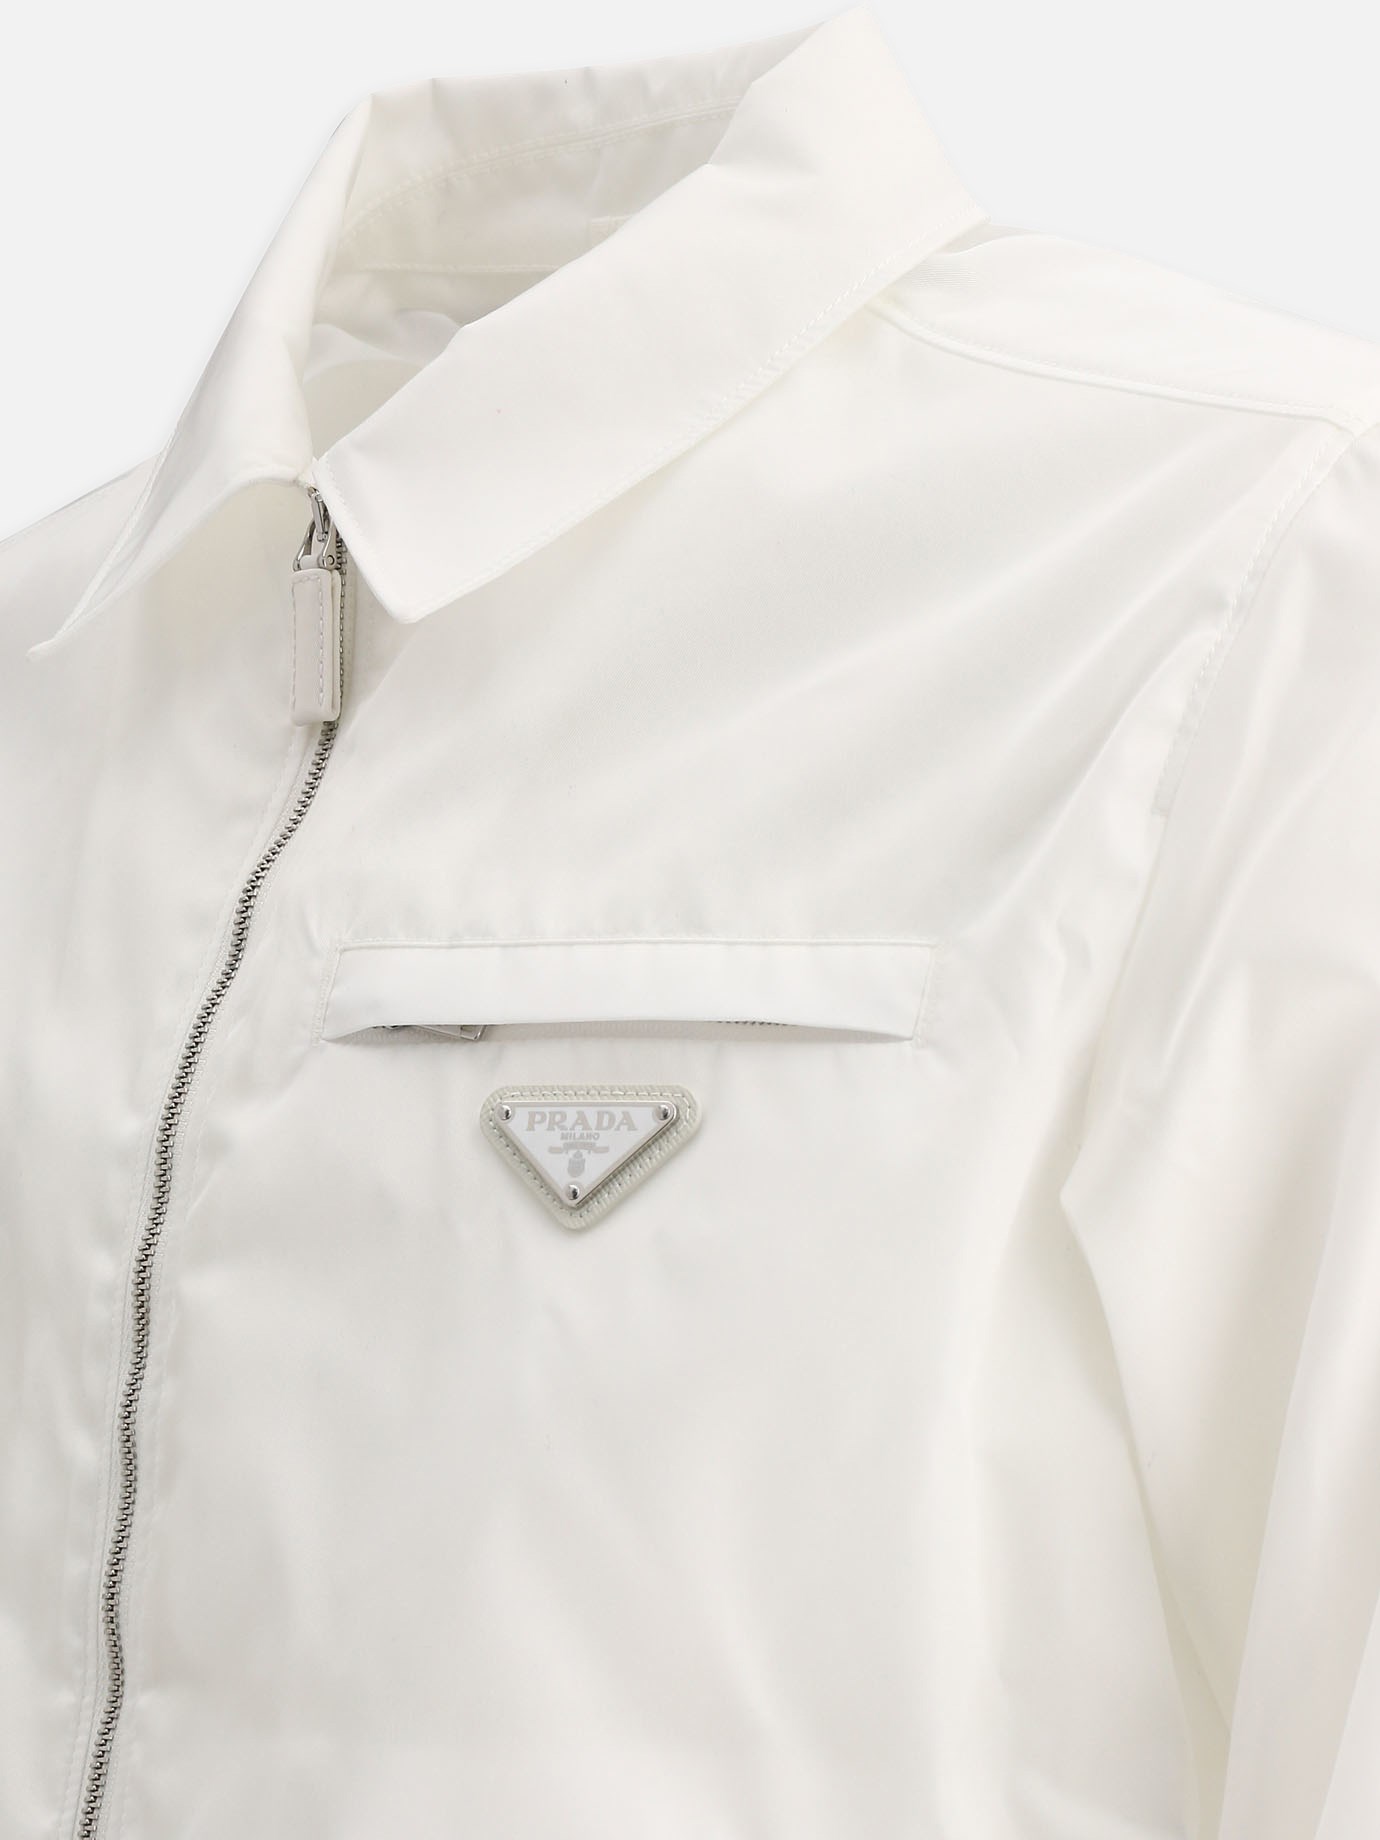  Re-Nylon  jacket by Prada